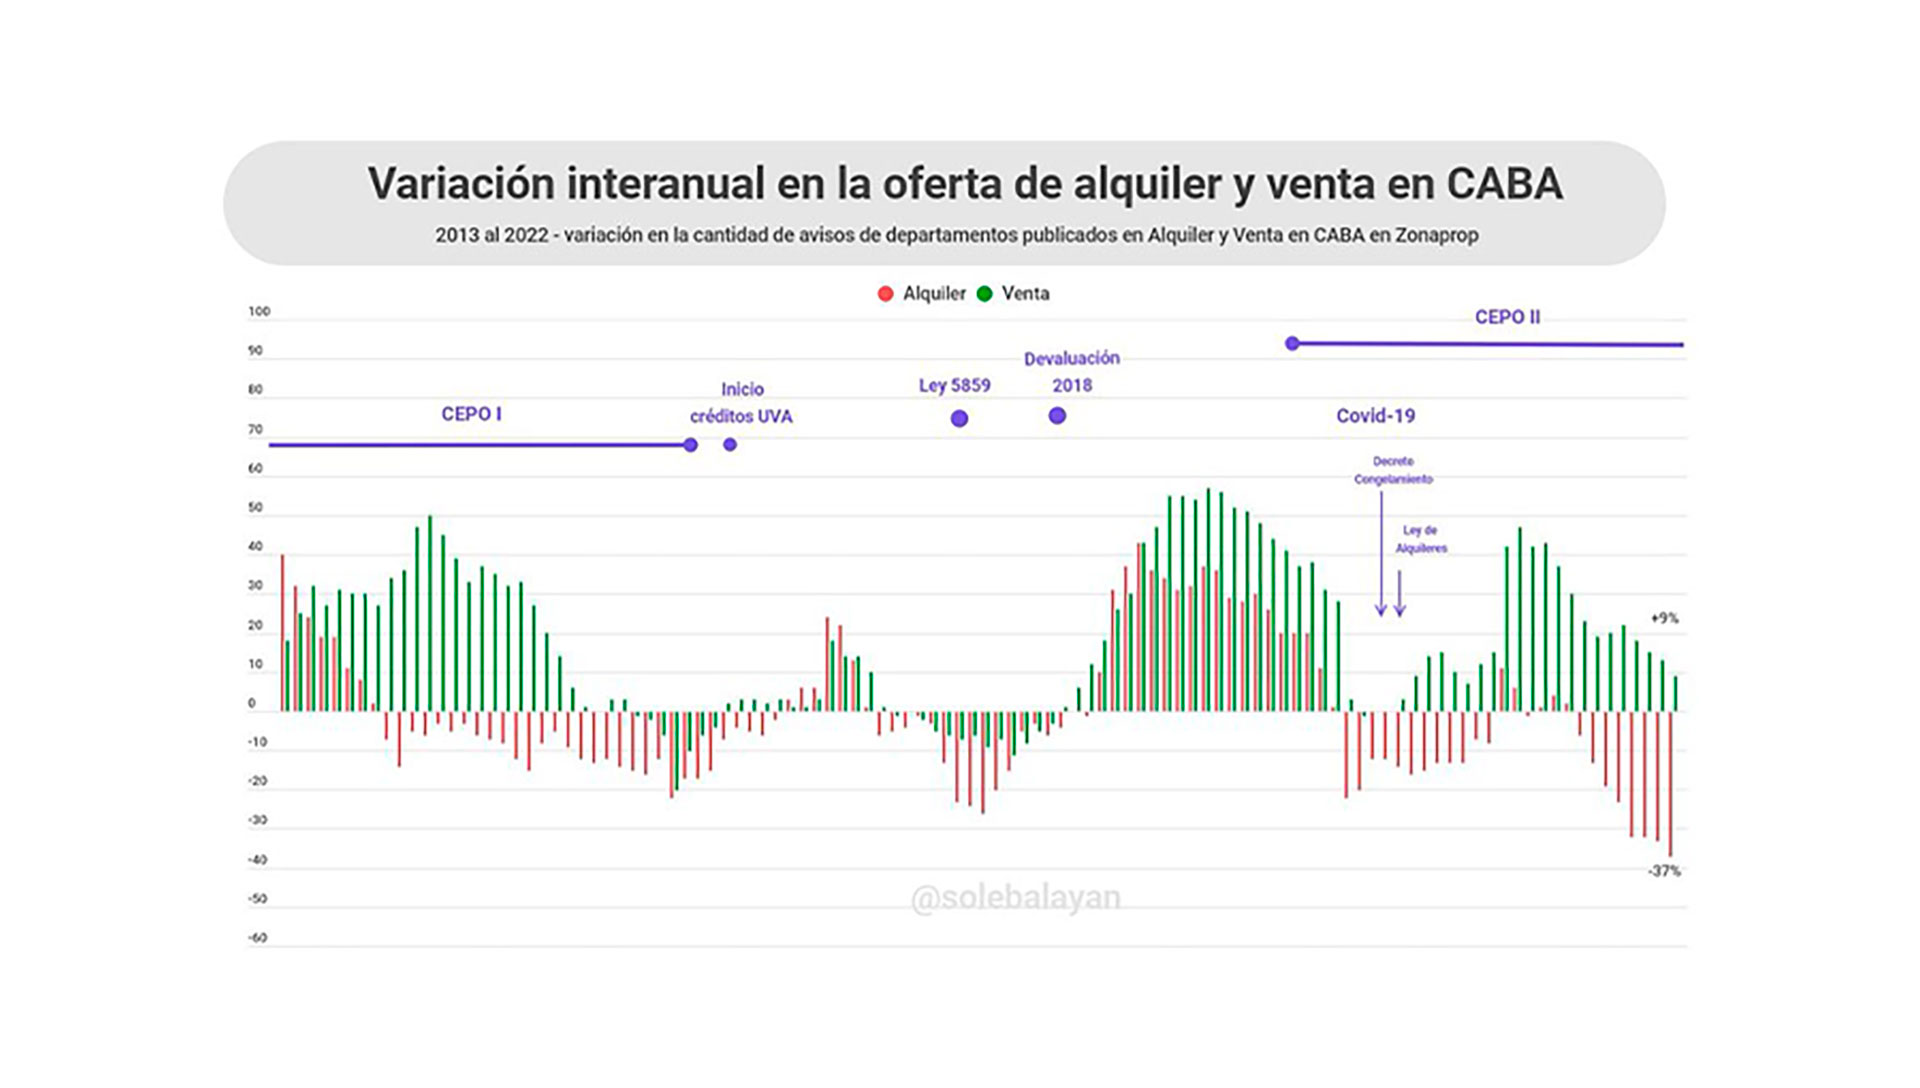 Evolución de la oferta de departamentos en CABA
Fuente: Soledad Balayan